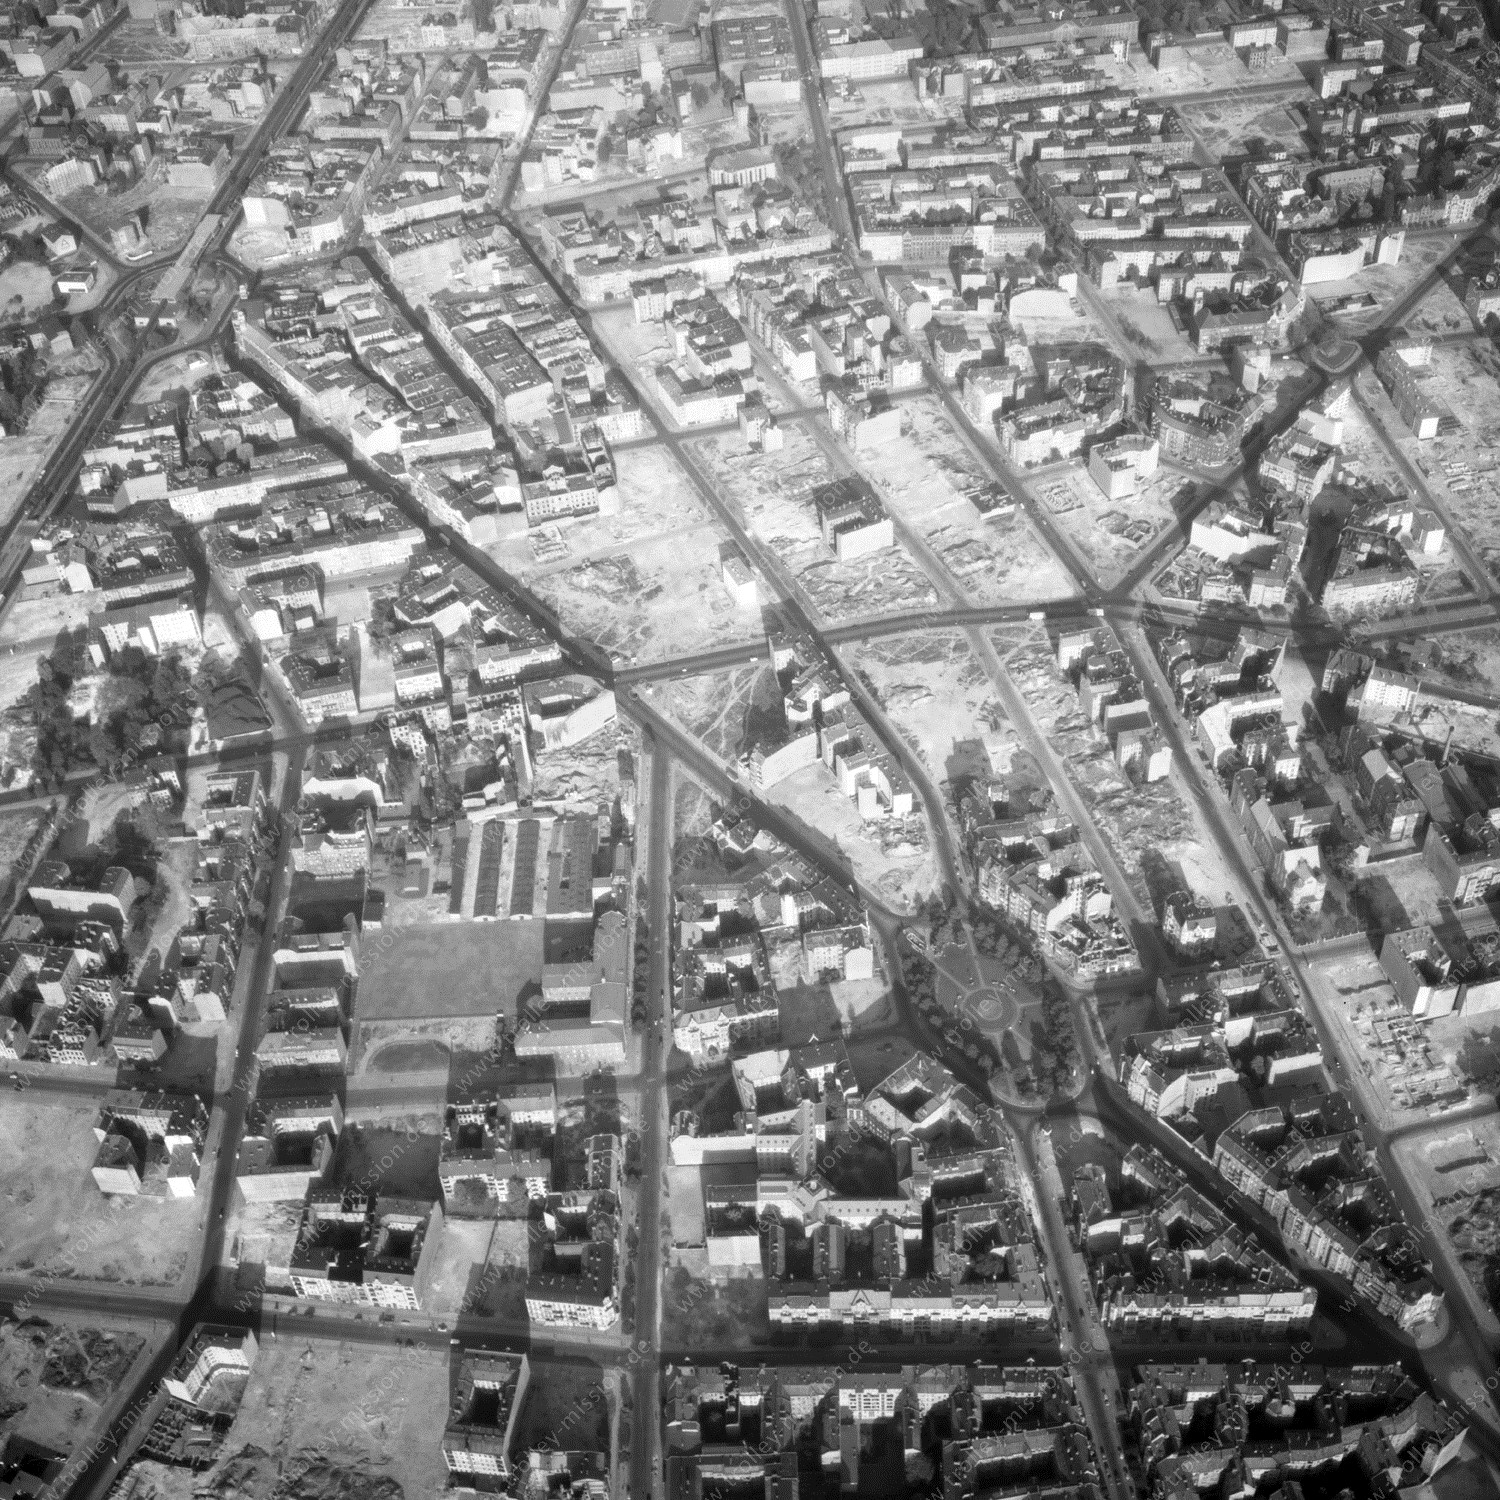 Alte Fotos und Luftbilder von Berlin - Luftbildaufnahme Nr. 07 - Historische Luftaufnahmen von West-Berlin aus dem Jahr 1954 - Flugstrecke Foxtrot